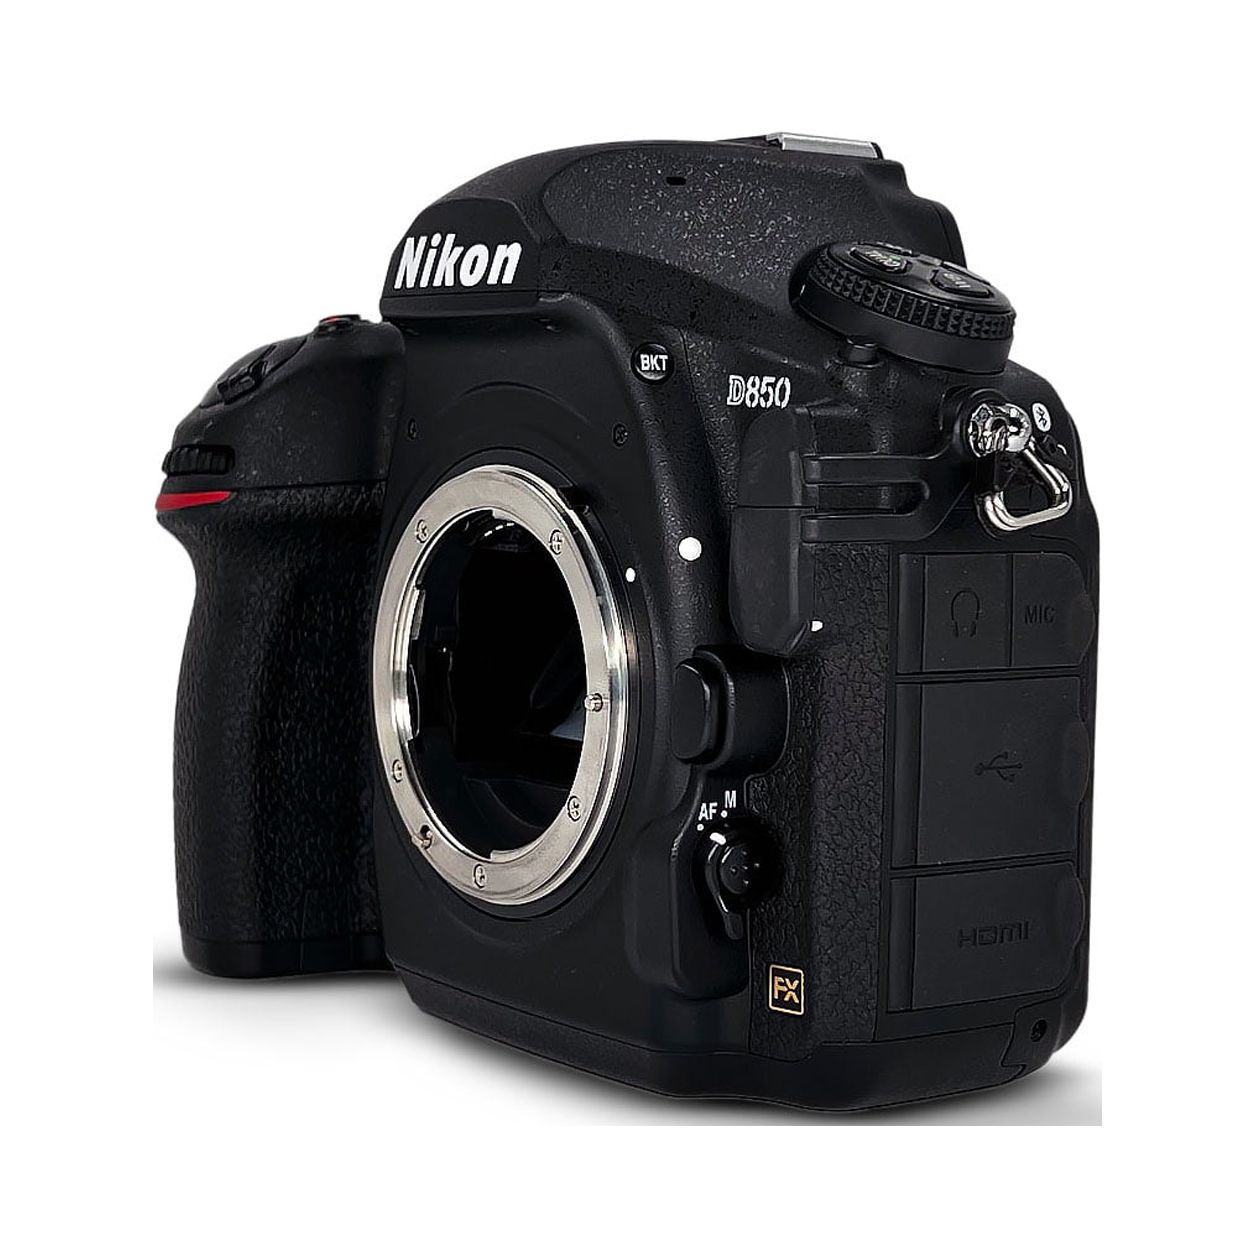 Nikon D850 DSLR Camera in Black (Body Only) - image 1 of 6